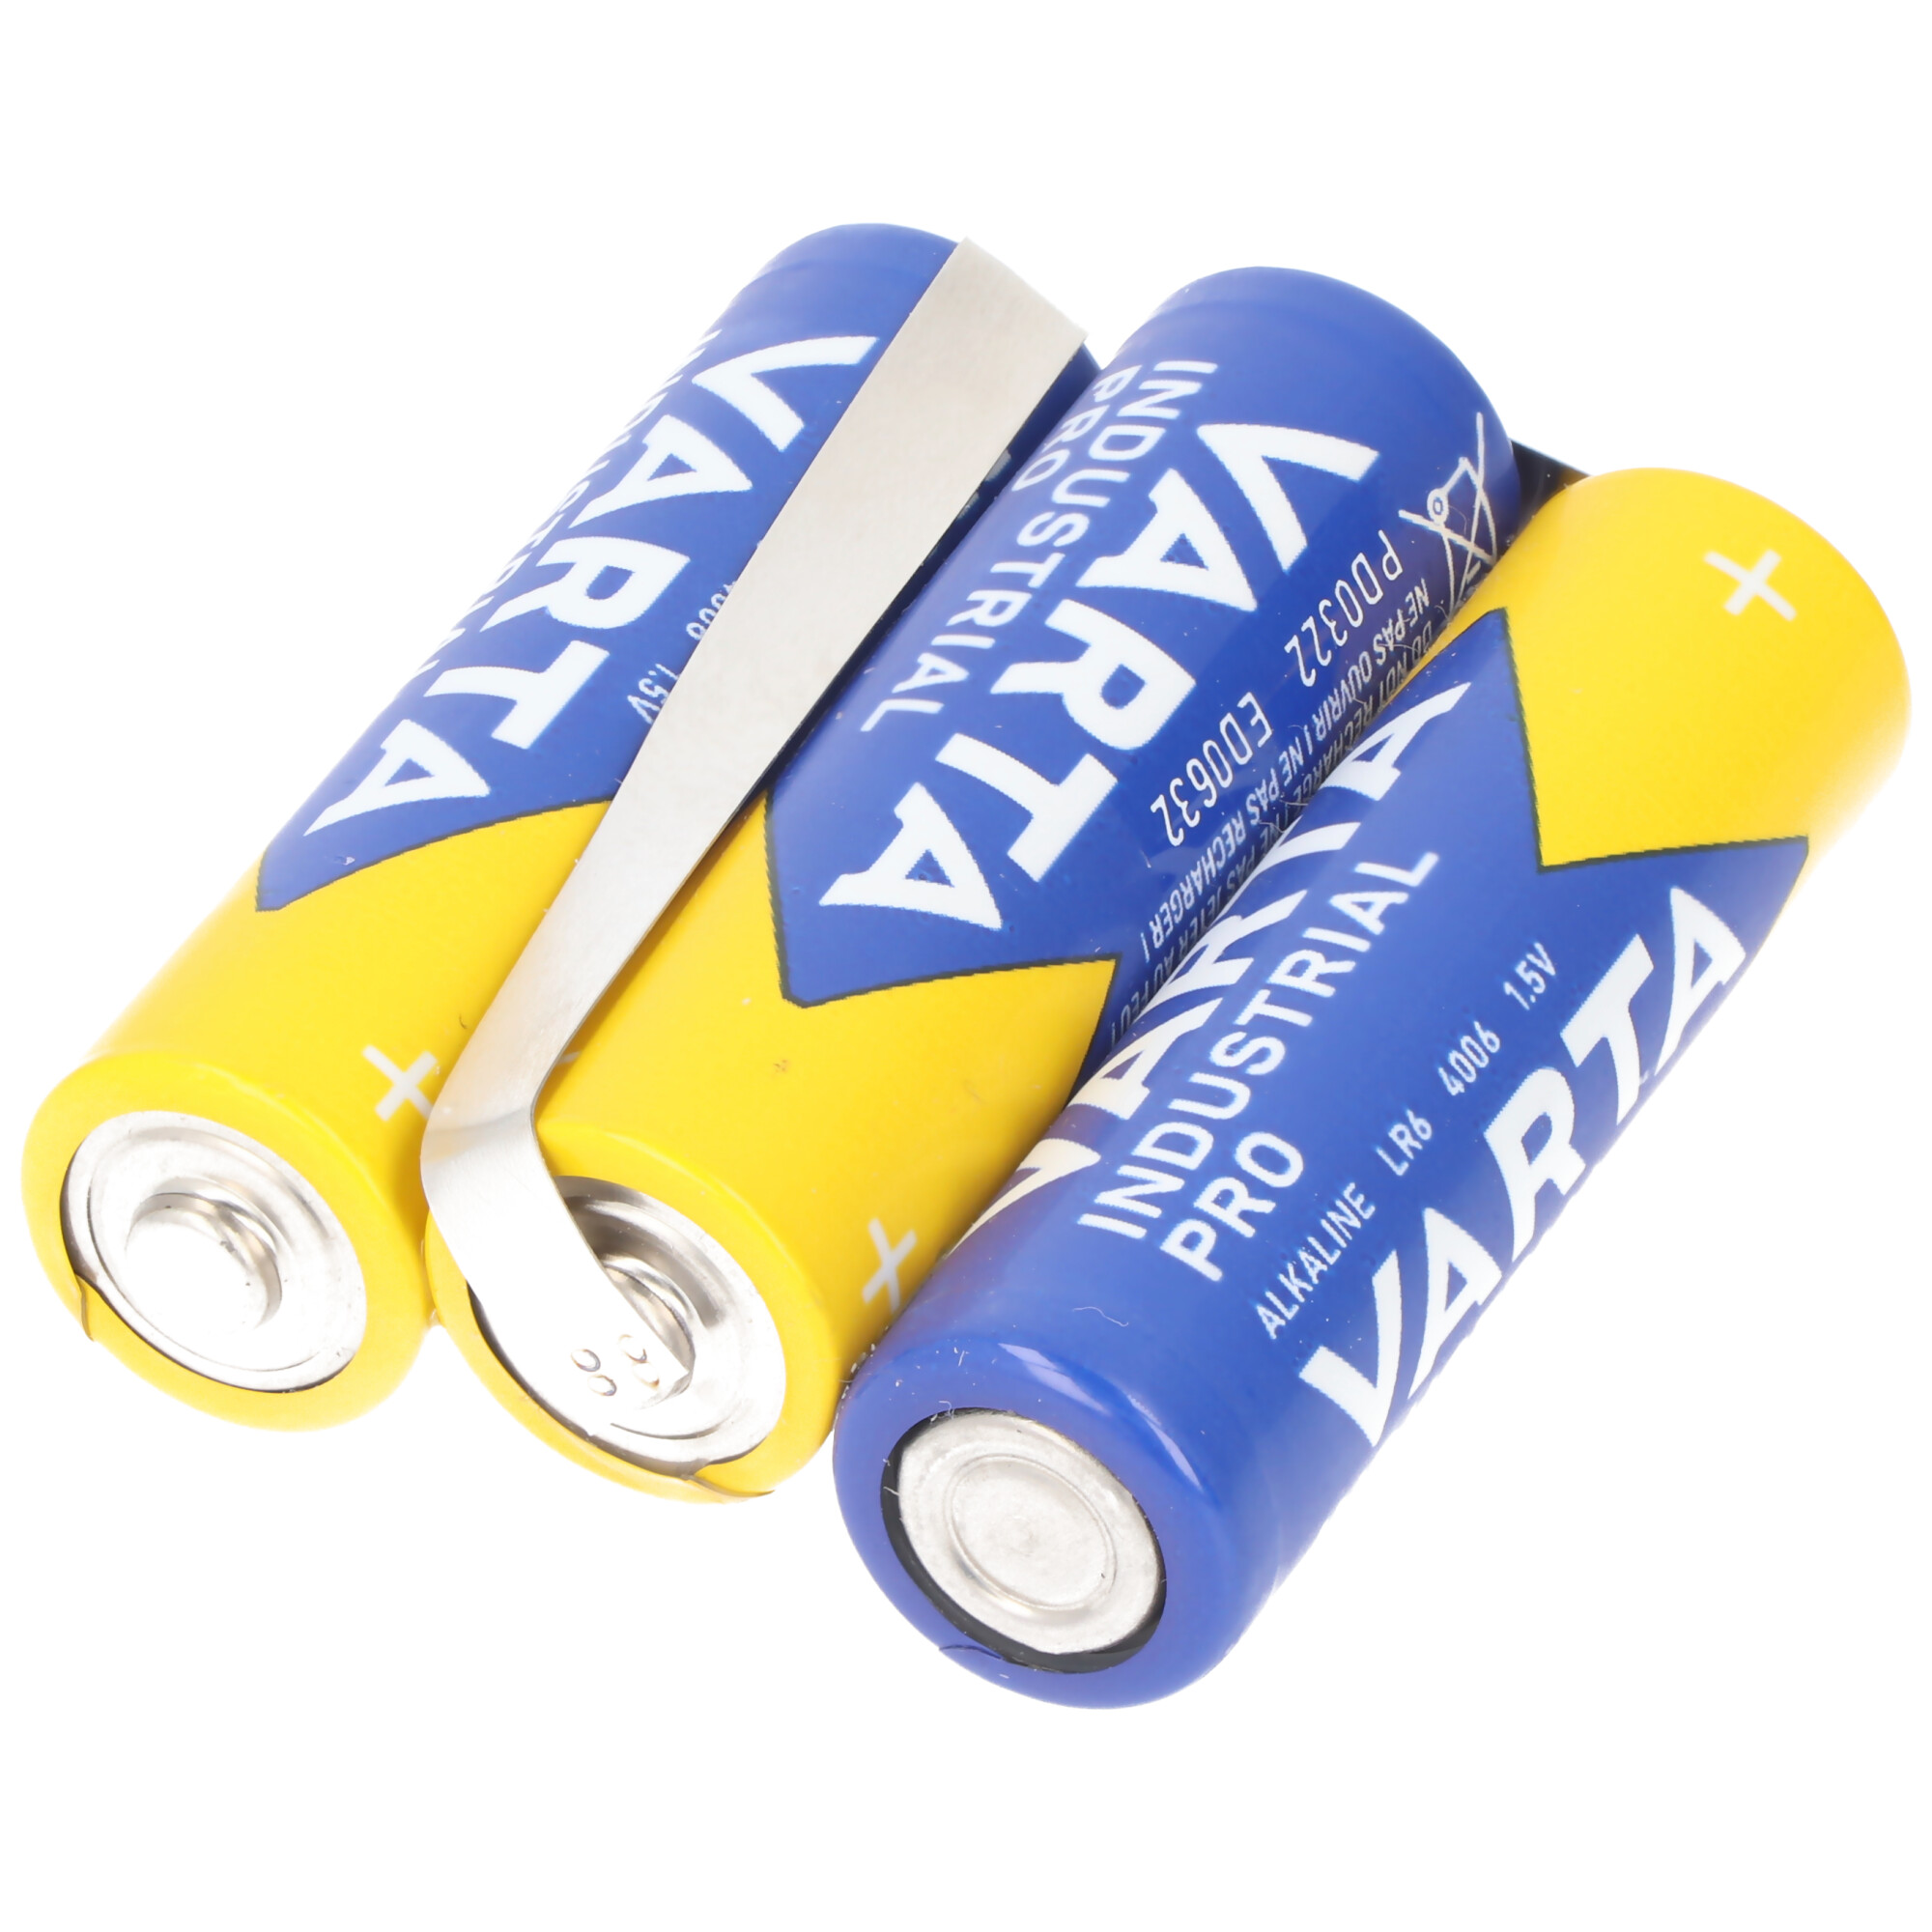 Varta Batteriepack F1x3 Bogen 4,5V 2600mAh 3er-Pack 4.5V, Abmessungen ca. 50,7 x 41,5 x 16,4mm